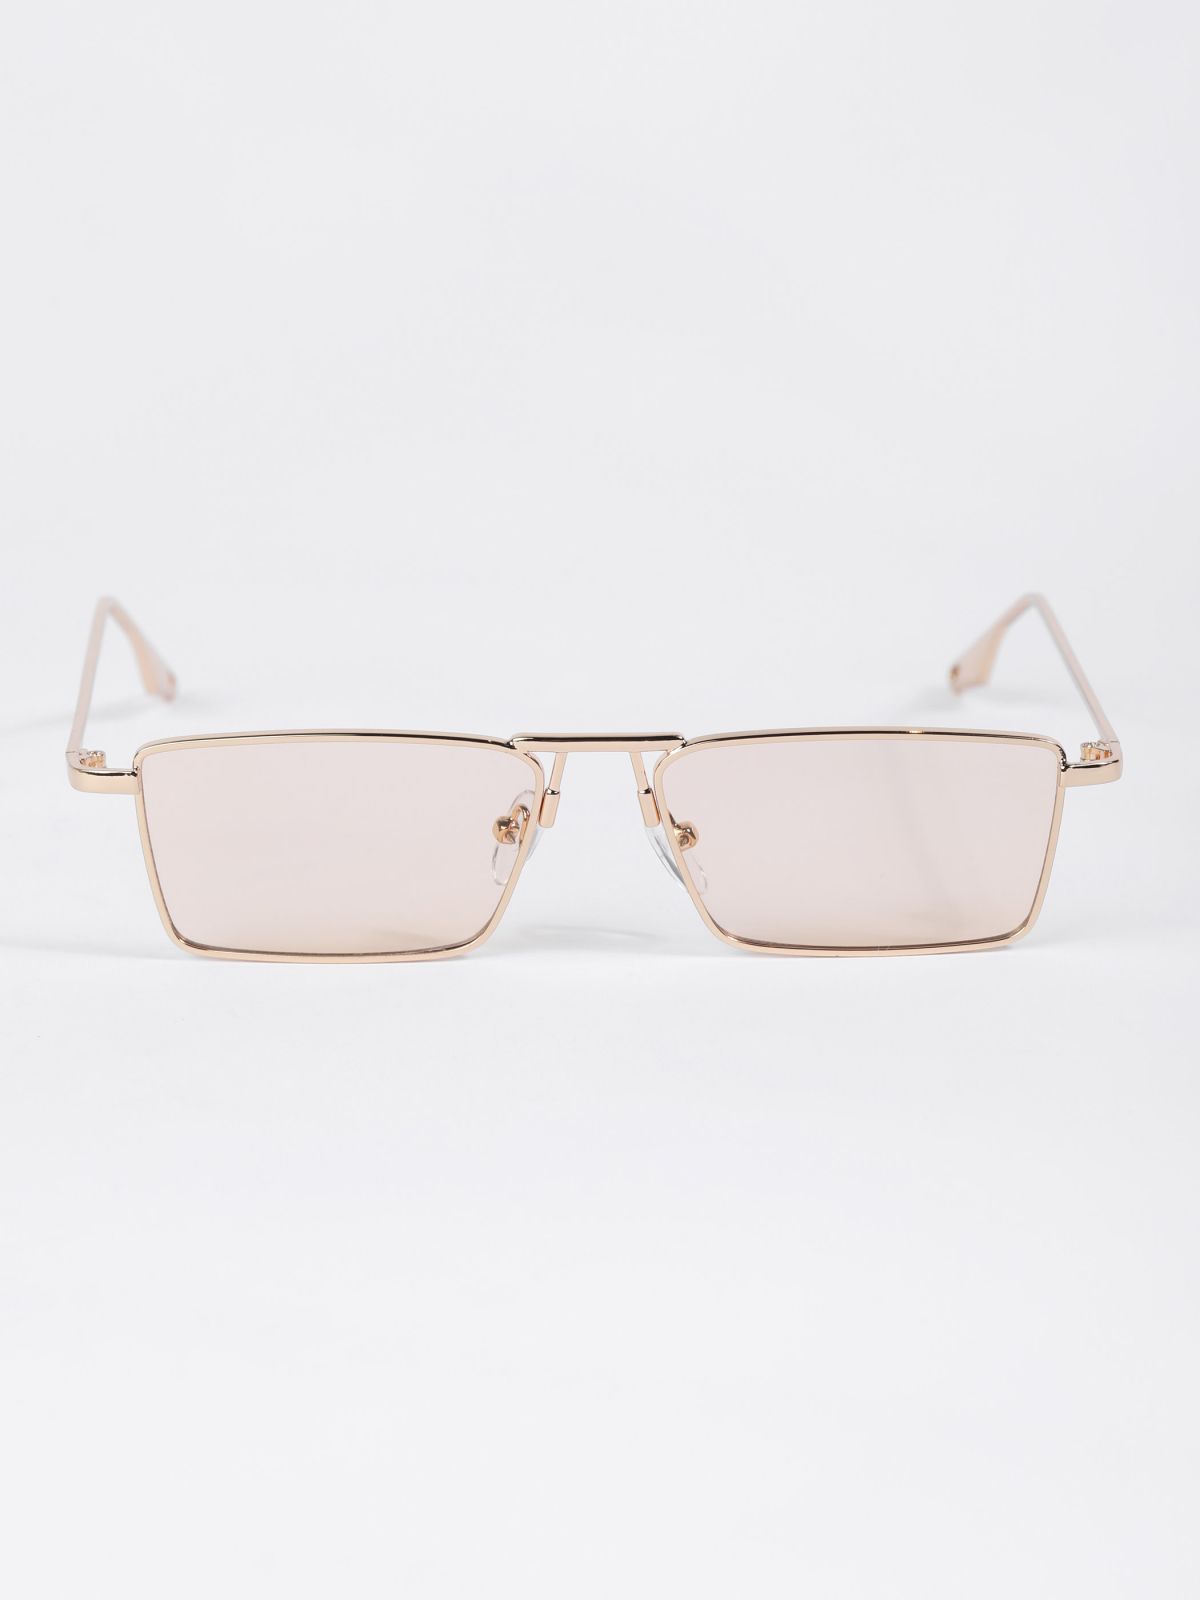  משקפי שמש מלבניים רטרו / TX Eyewear Collection של TERMINAL X